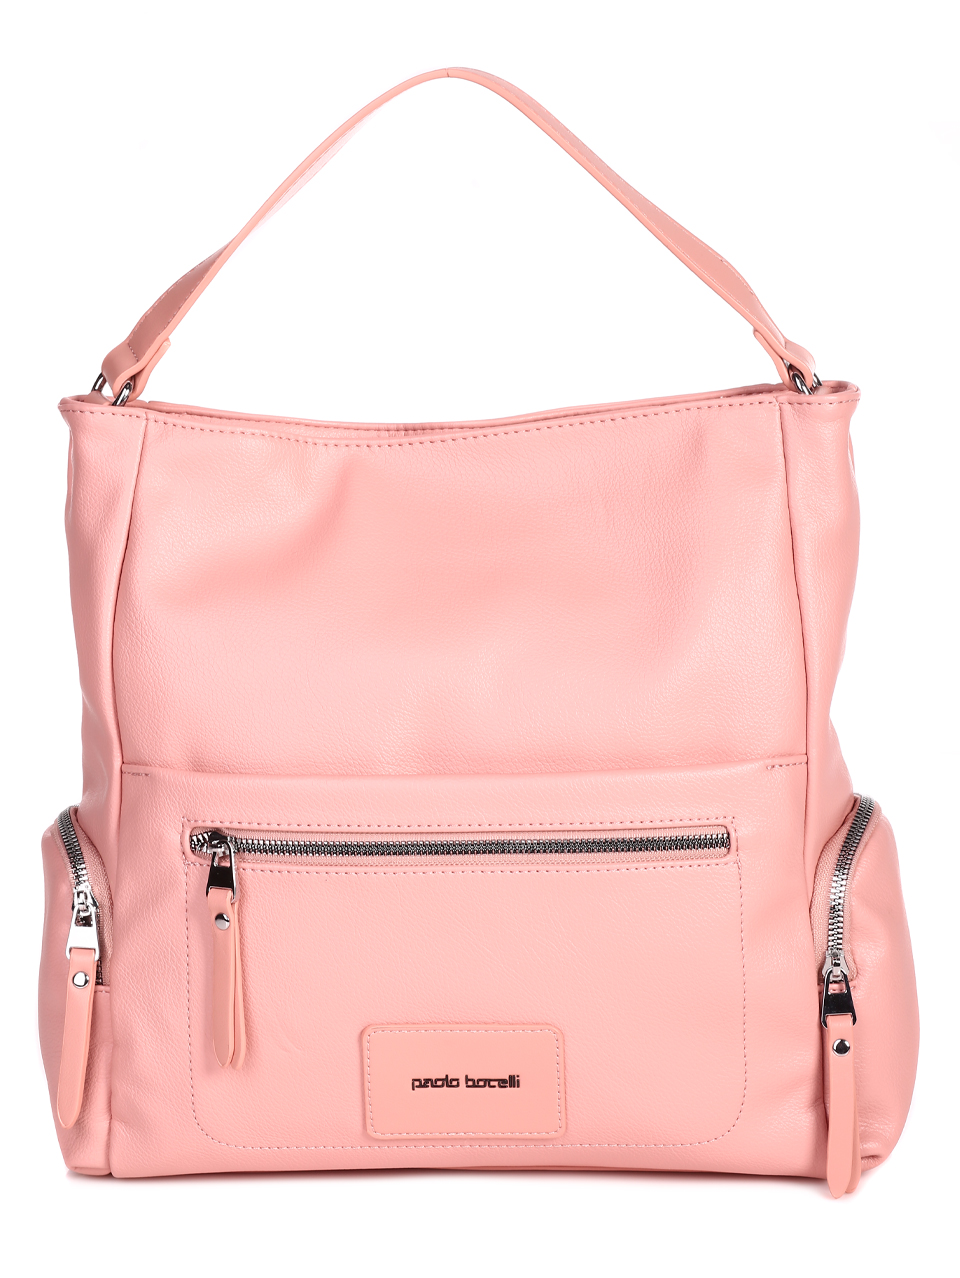 Ежедневна голяма дамска чанта в розово 9Q-23080 pink